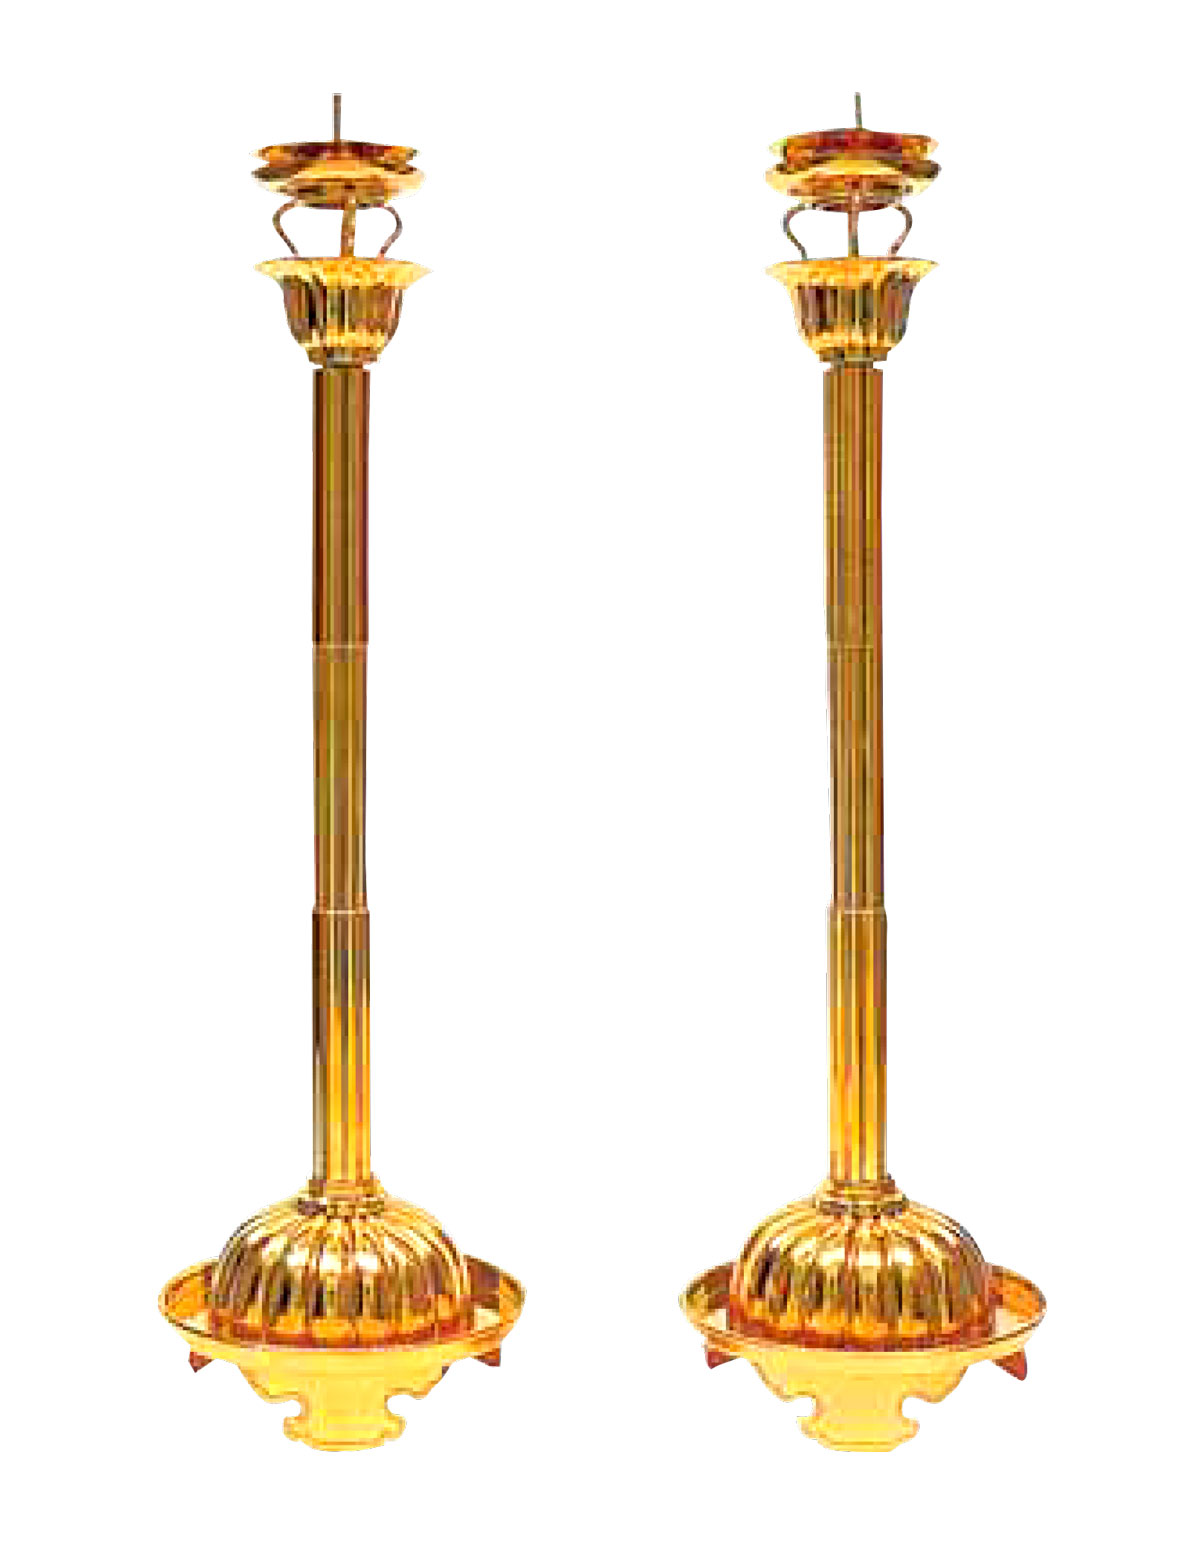 CE71 寺院仏具 真鍮製菊灯一対 50.5cm さざえ仏教美術蝋燭菊燈浄土真宗